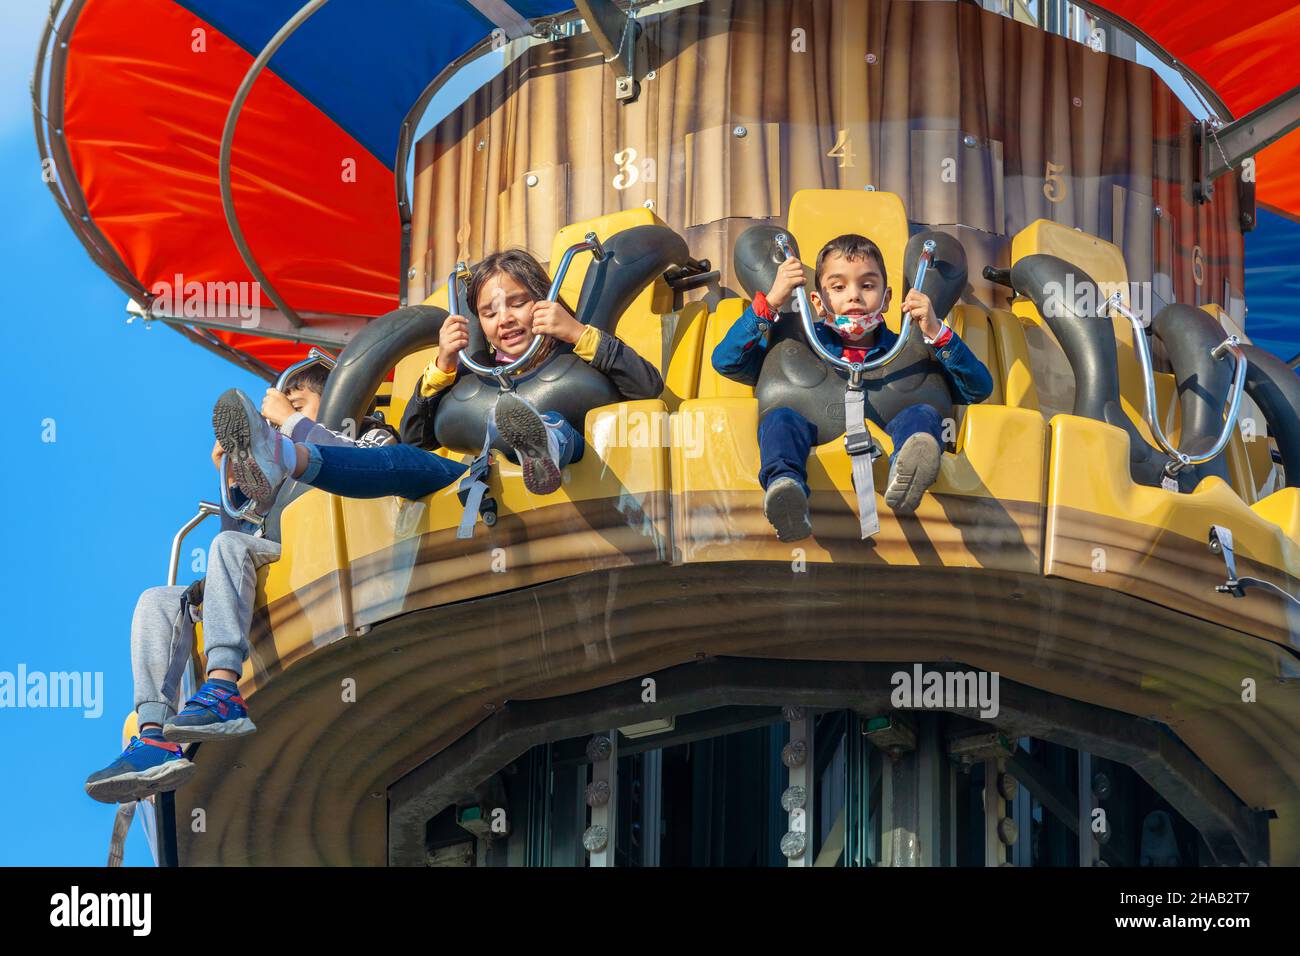 Ankara-Türkei:3. Oktober 2021: Kinder haben Spaß im luna Park | Genclik Parki in Ankara. Leute mit hohem adneraline Unterhaltung im Vergnügungspark. Stockfoto